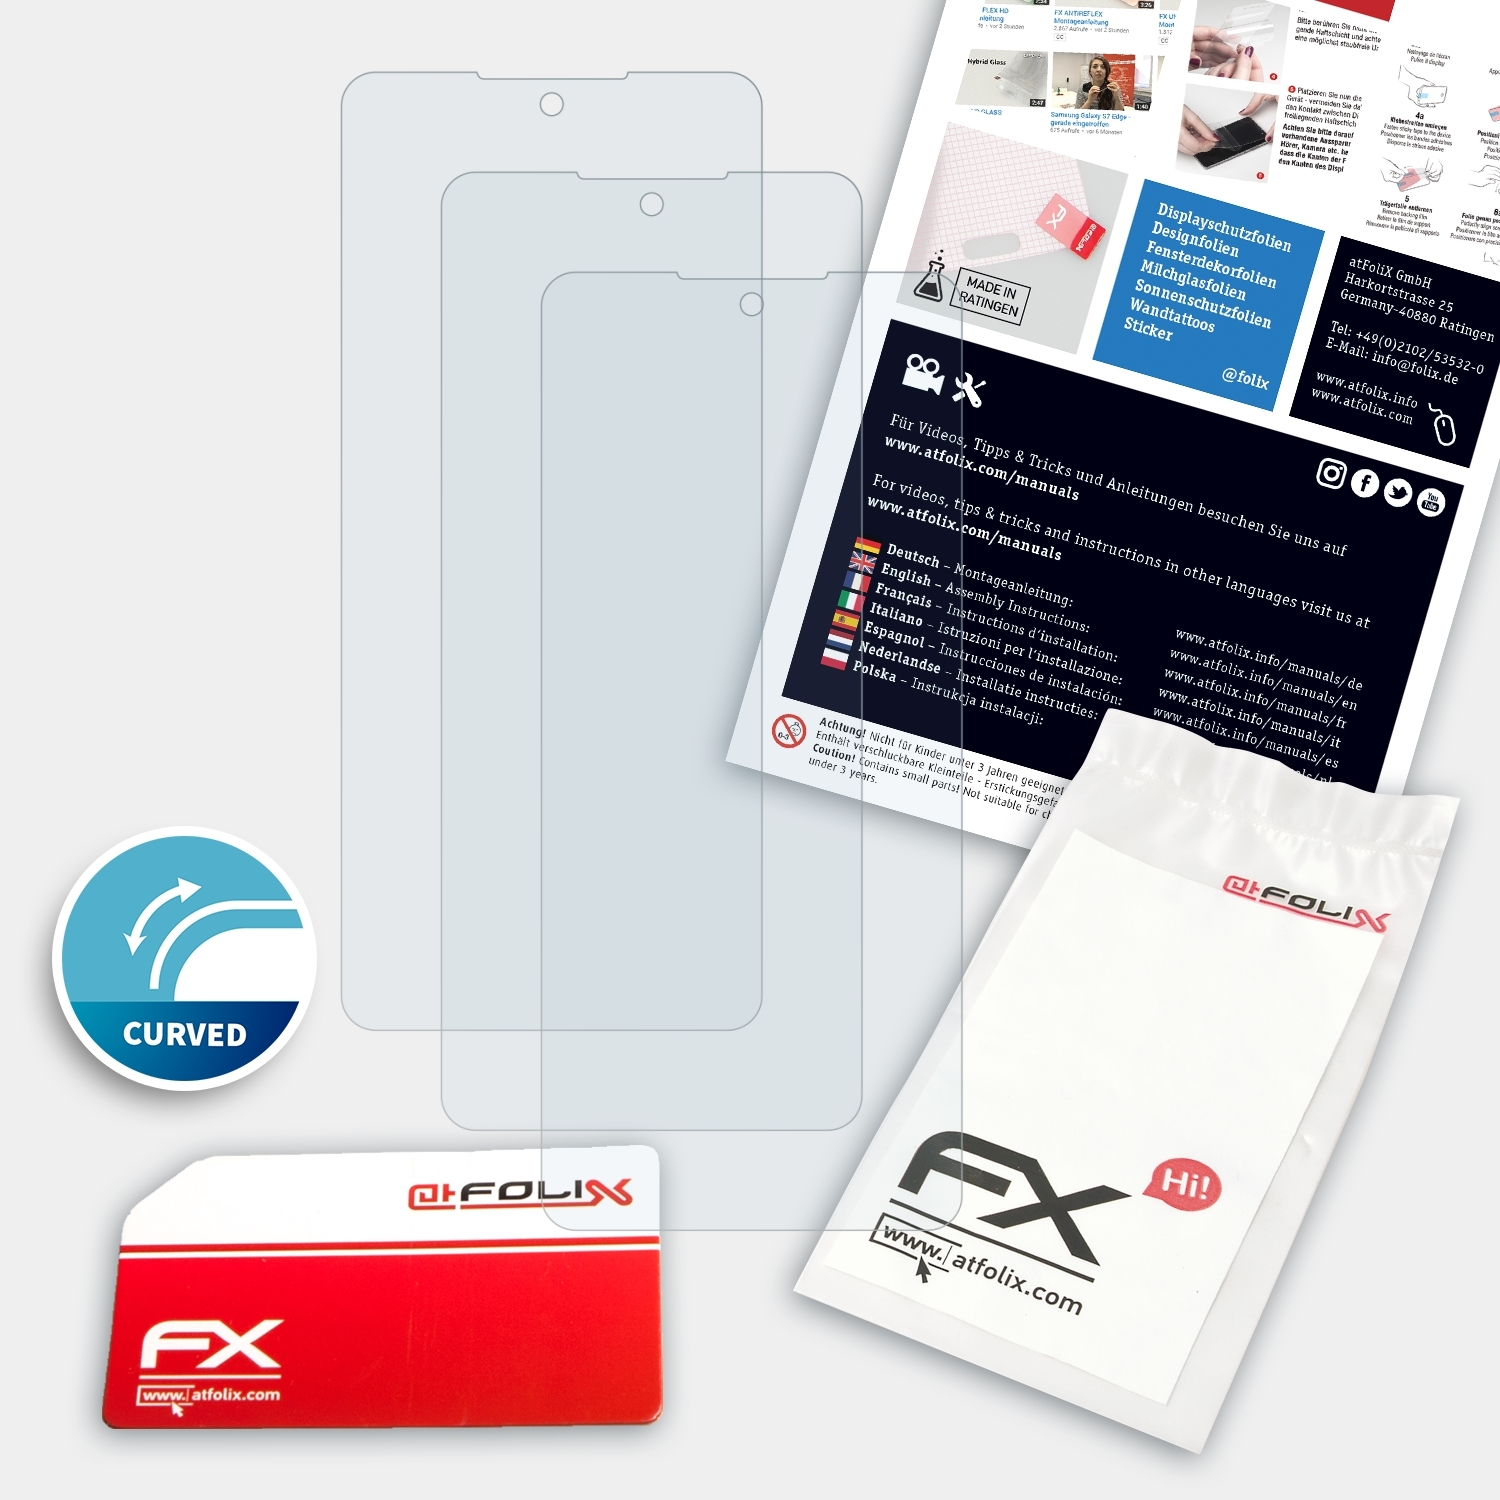 ATFOLIX 3x LG Displayschutz(für FX-ActiFleX K71)